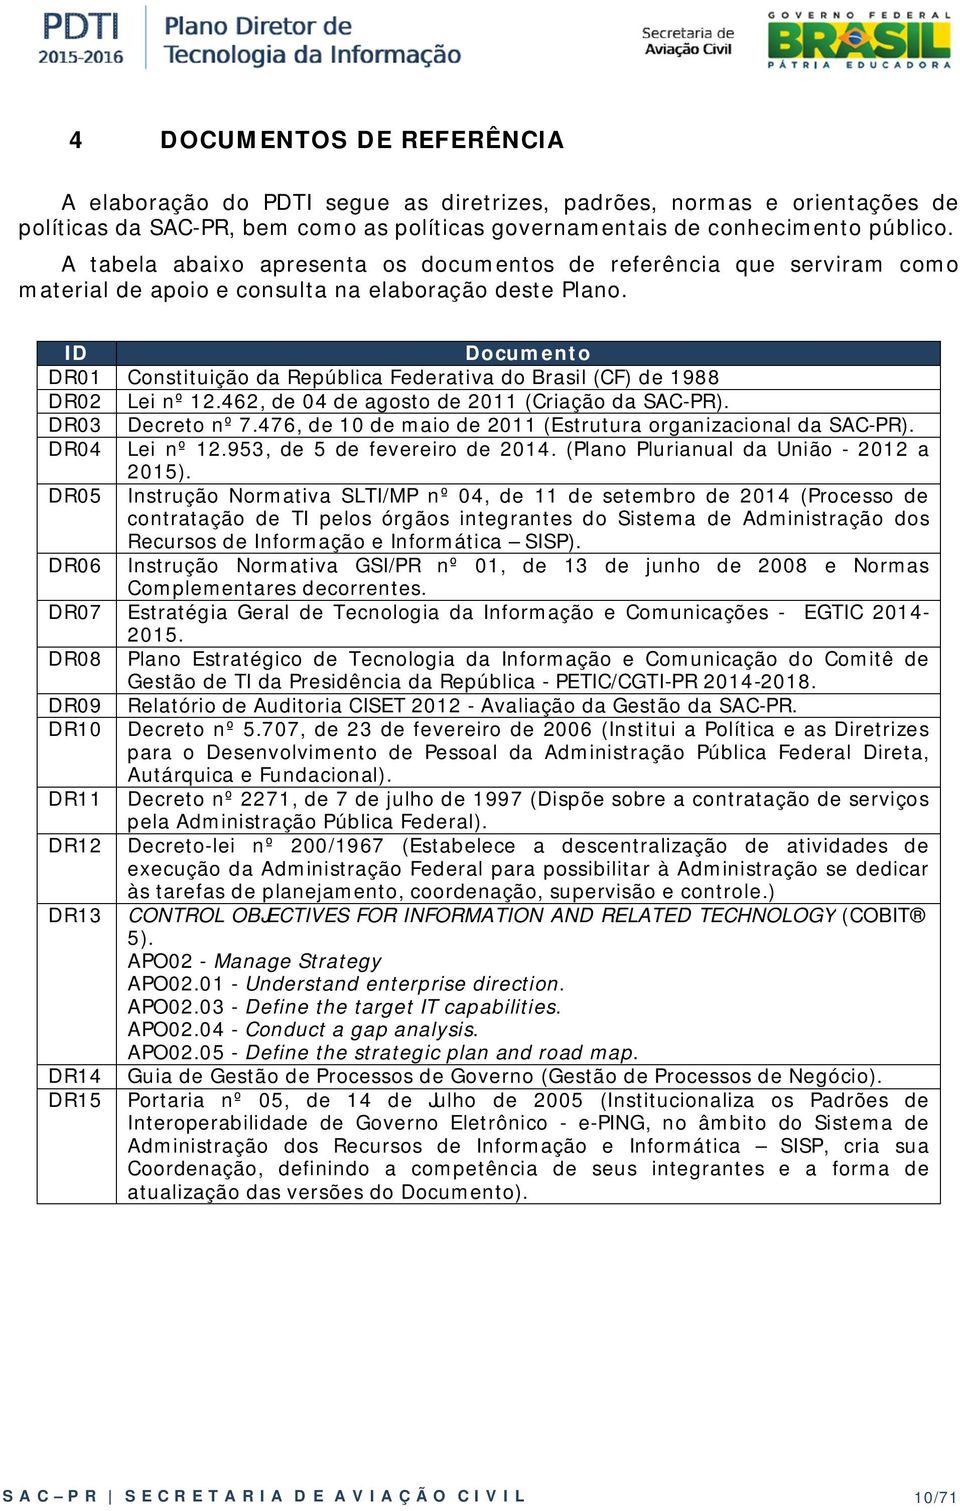 Documento DR01 Constituição da República Federativa do Brasil (CF) de 1988 DR02 Lei nº 12.462, de 04 de agosto de 2011 (Criação da SAC-PR). DR03 Decreto nº 7.